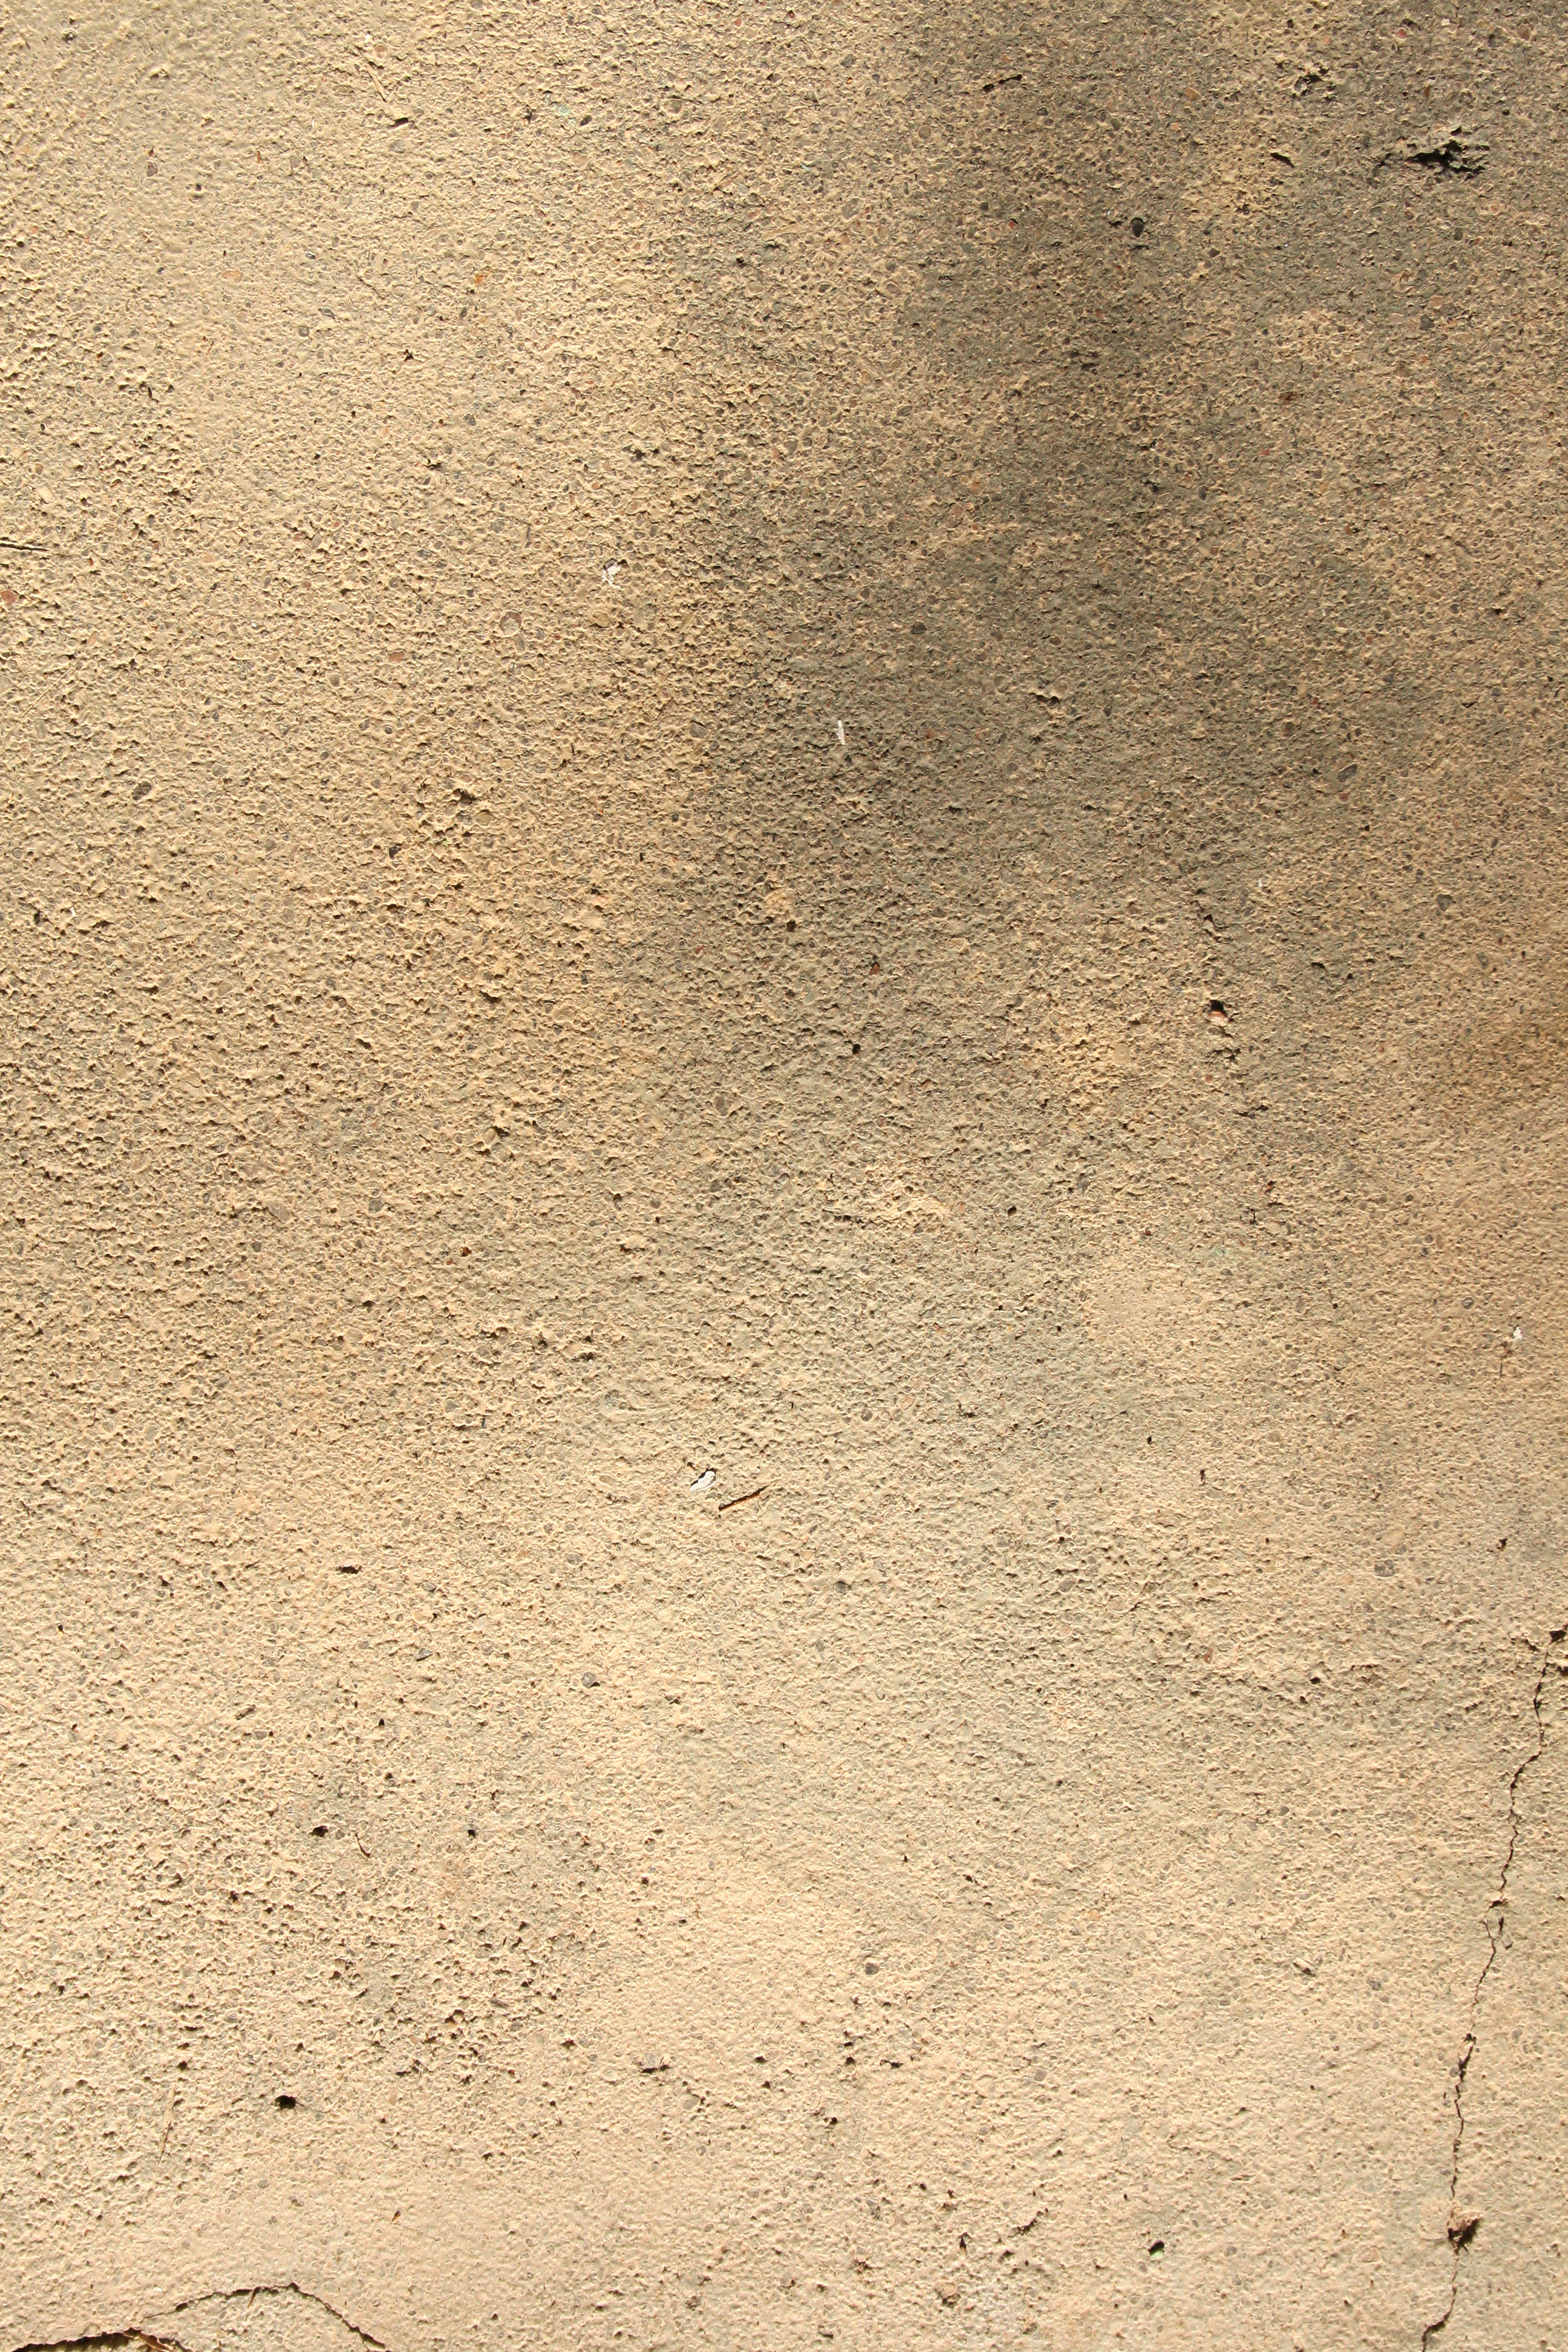 Simple concrete texture photo